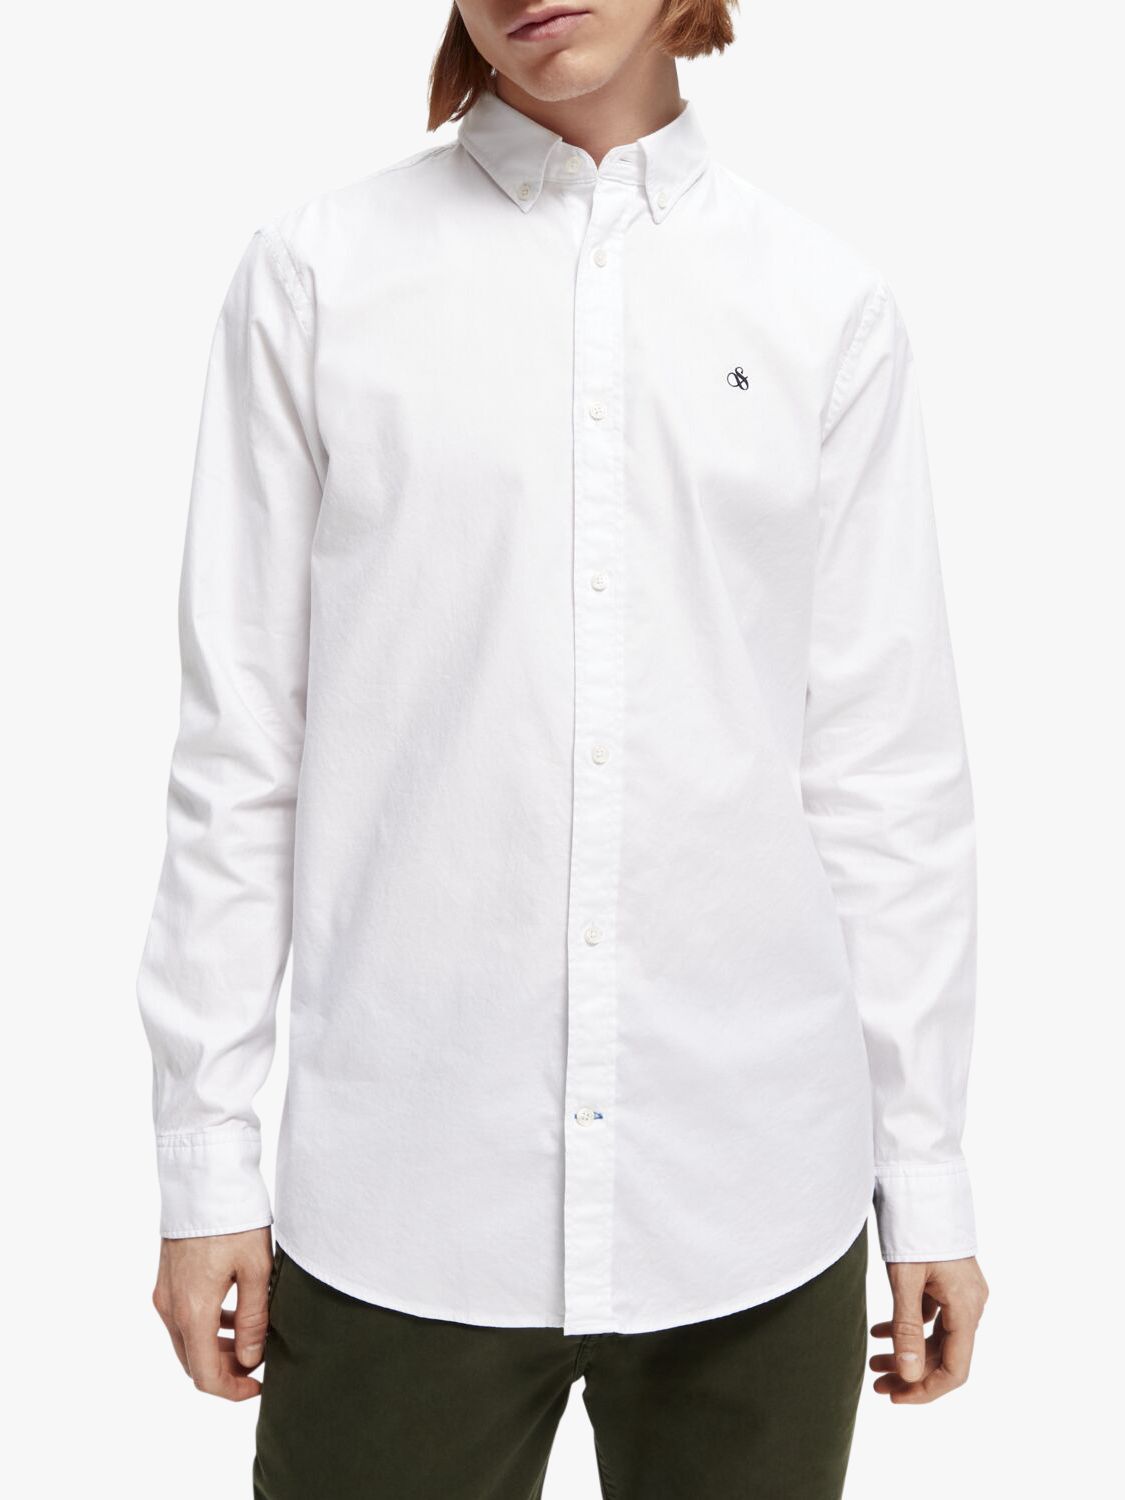 Scotch & Soda Oxford Regular Fit Shirt, 0006 - White at John Lewis ...